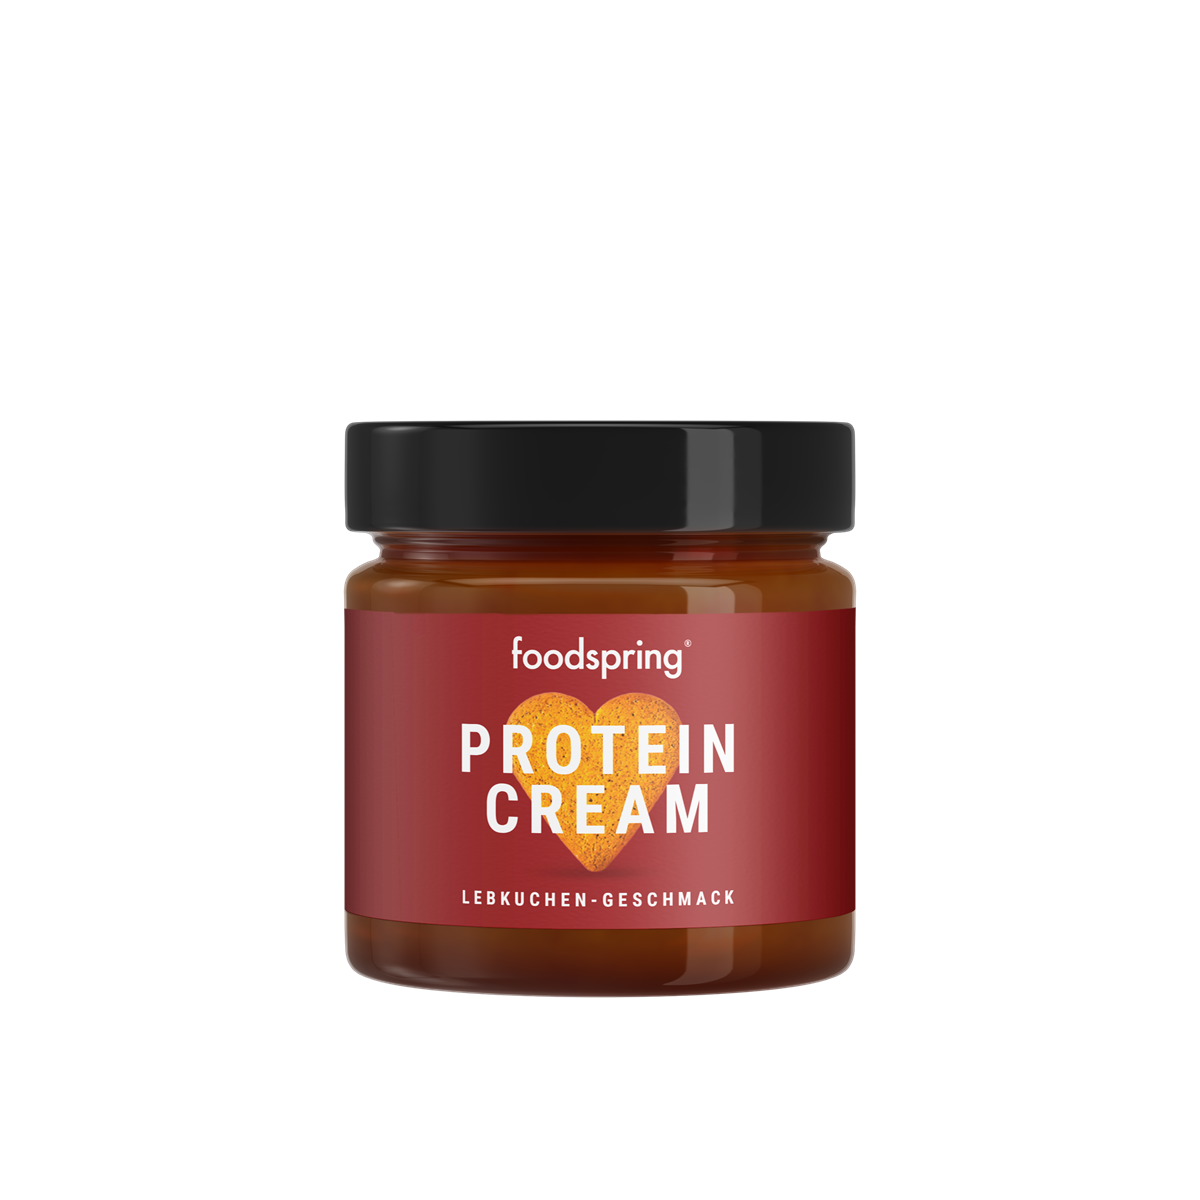 foodspring_Protein Cream_Lebkuchen_EUR 4,99